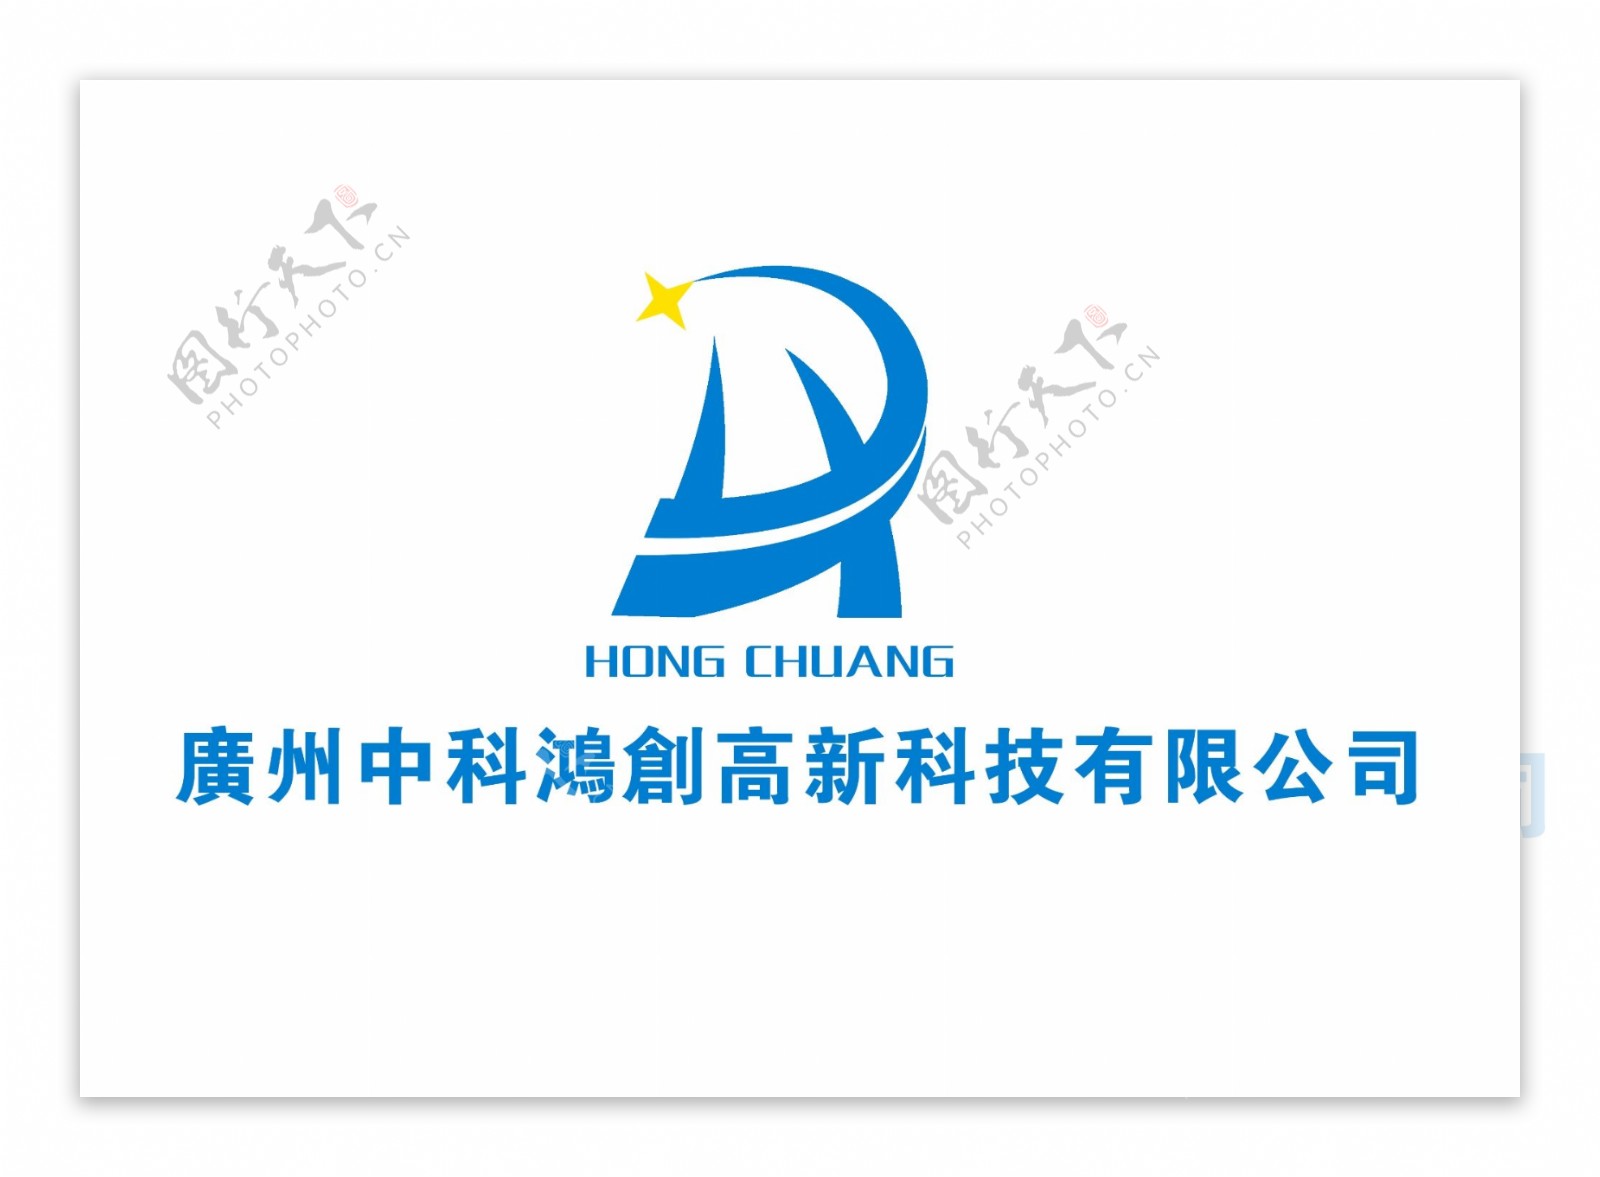 广州鸿创高新科技公司logo原创标志